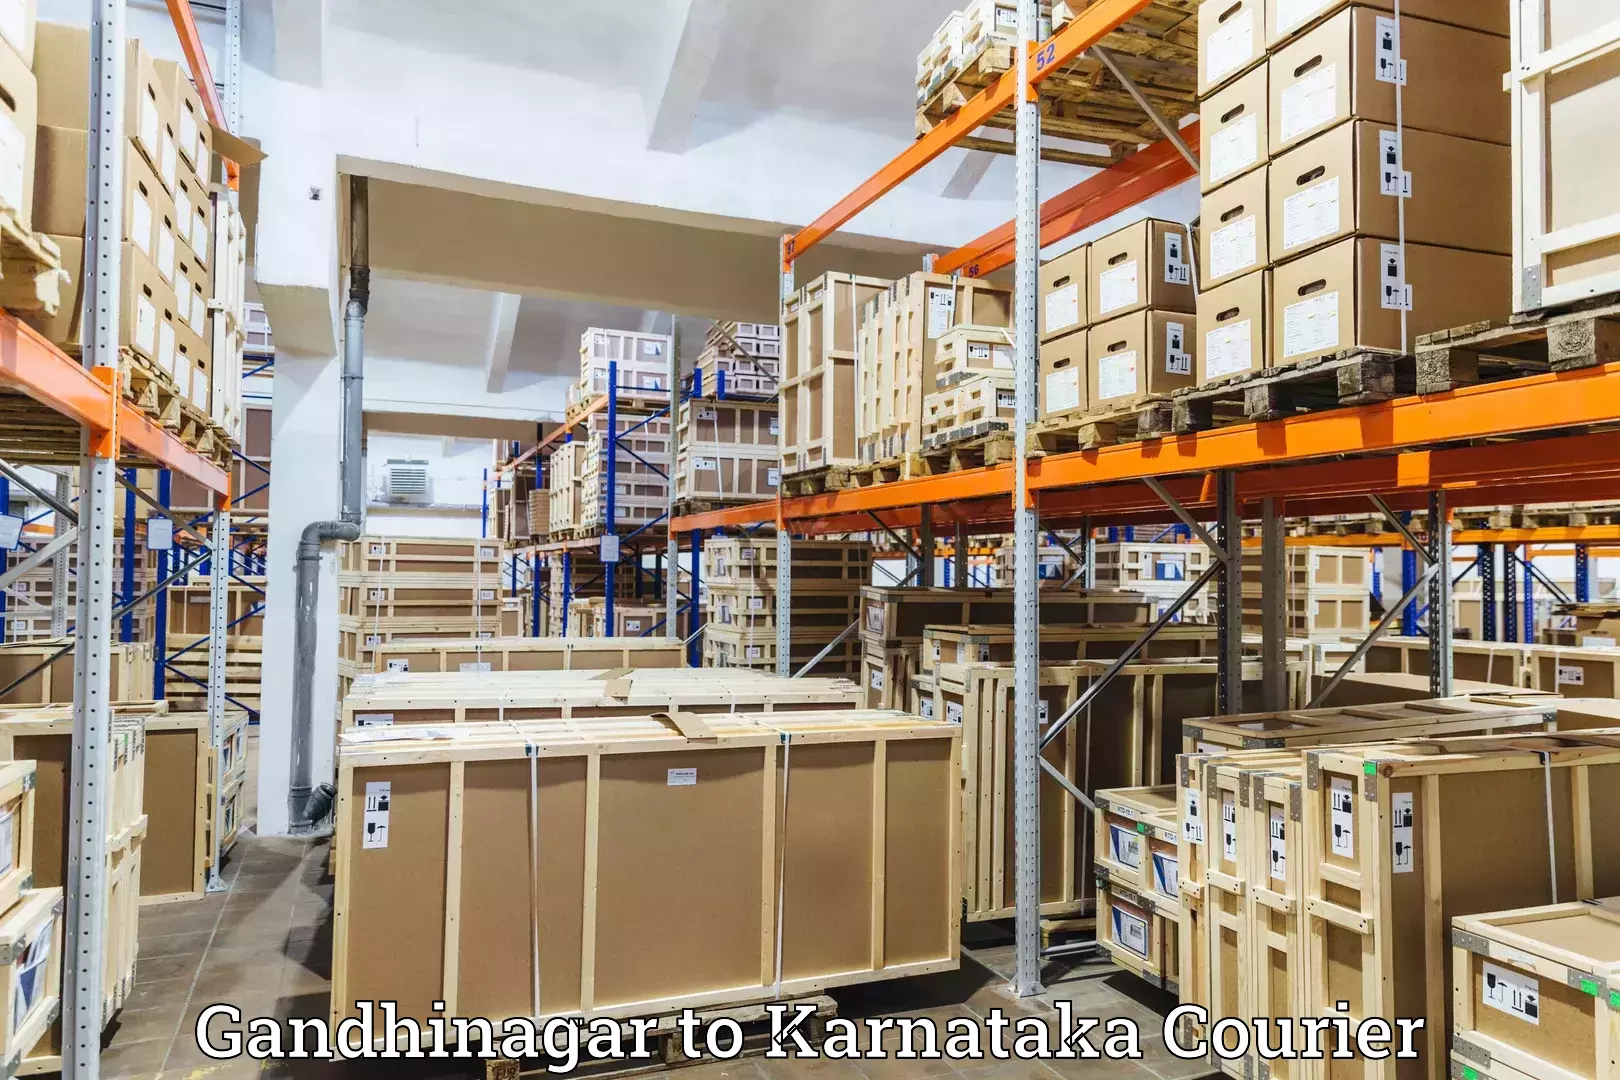 Weekend courier service Gandhinagar to Chintamani Kolar